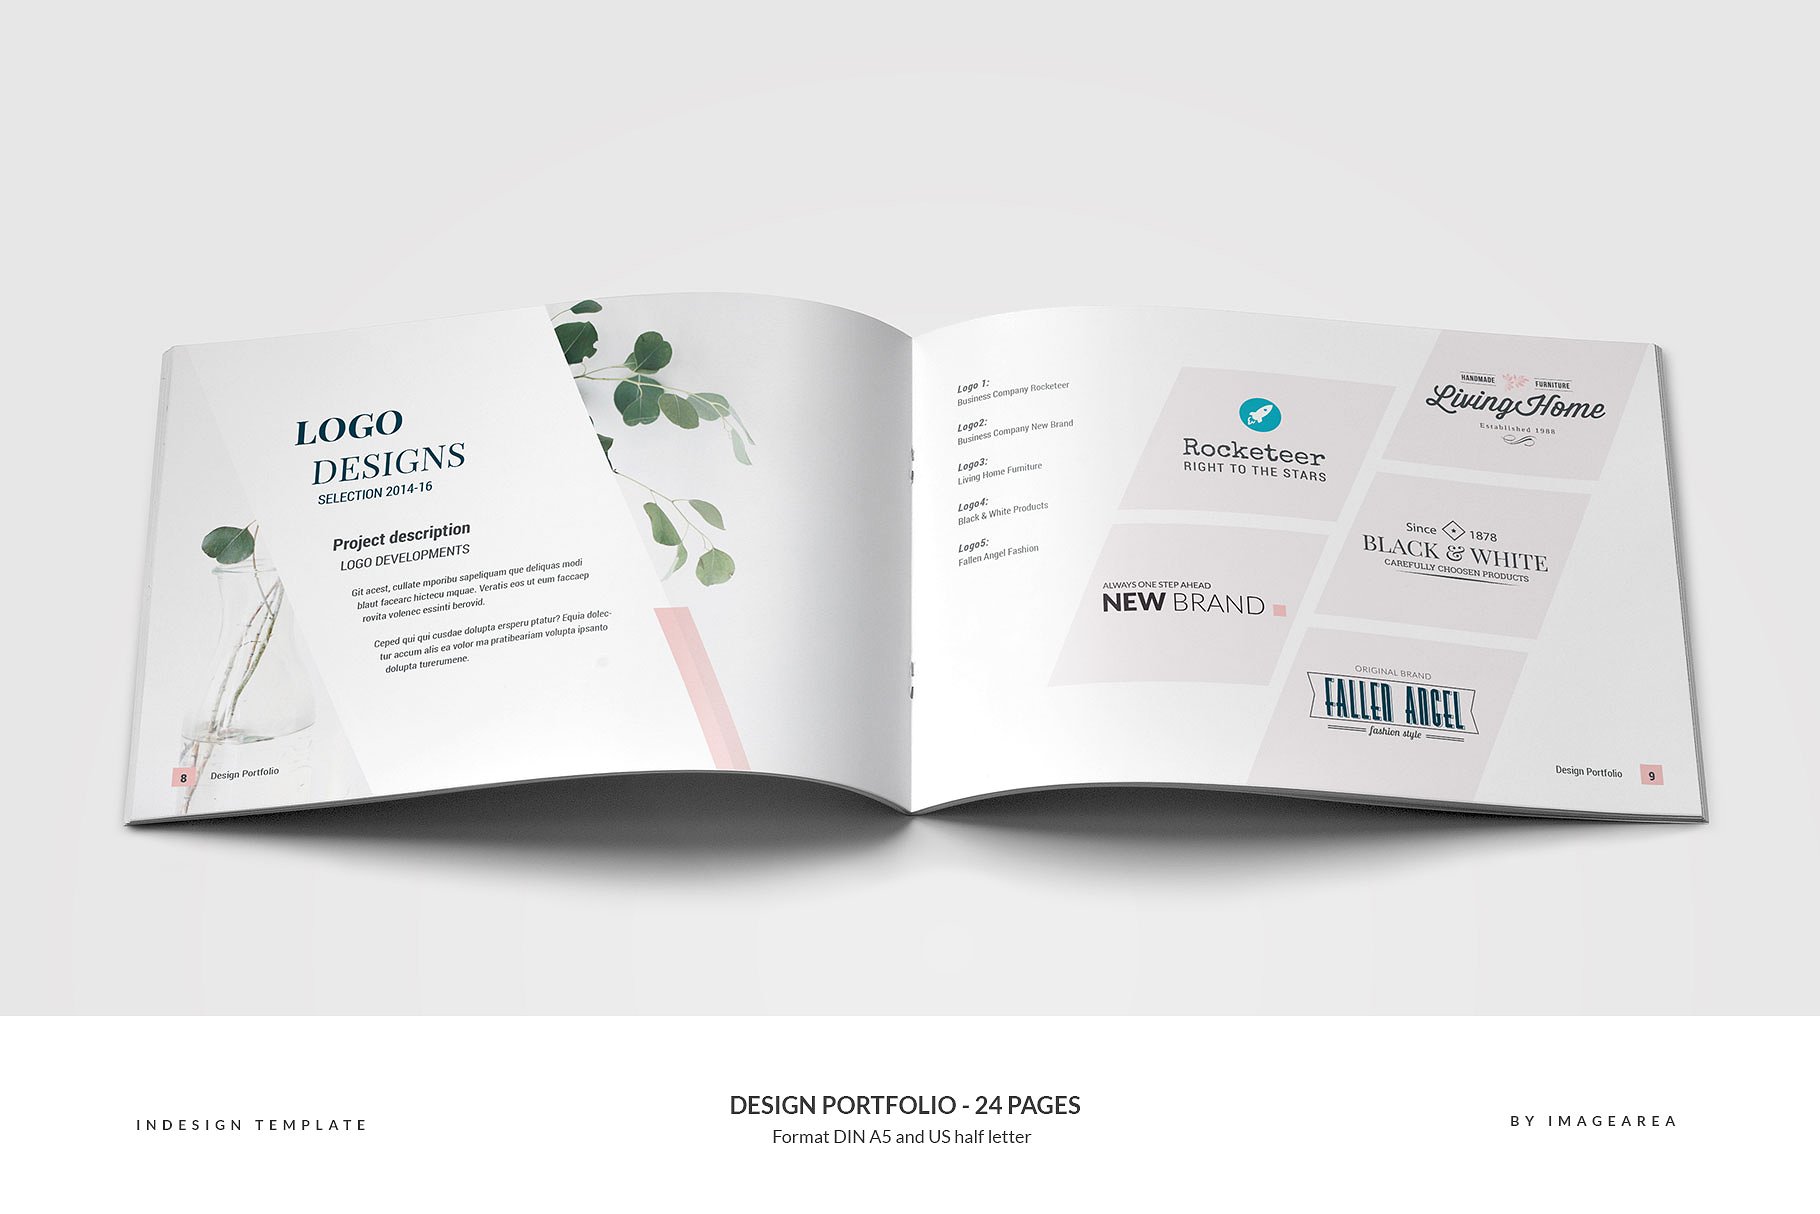 时尚简约企业画册模板 Design Portfolio – 24 Pages插图(4)